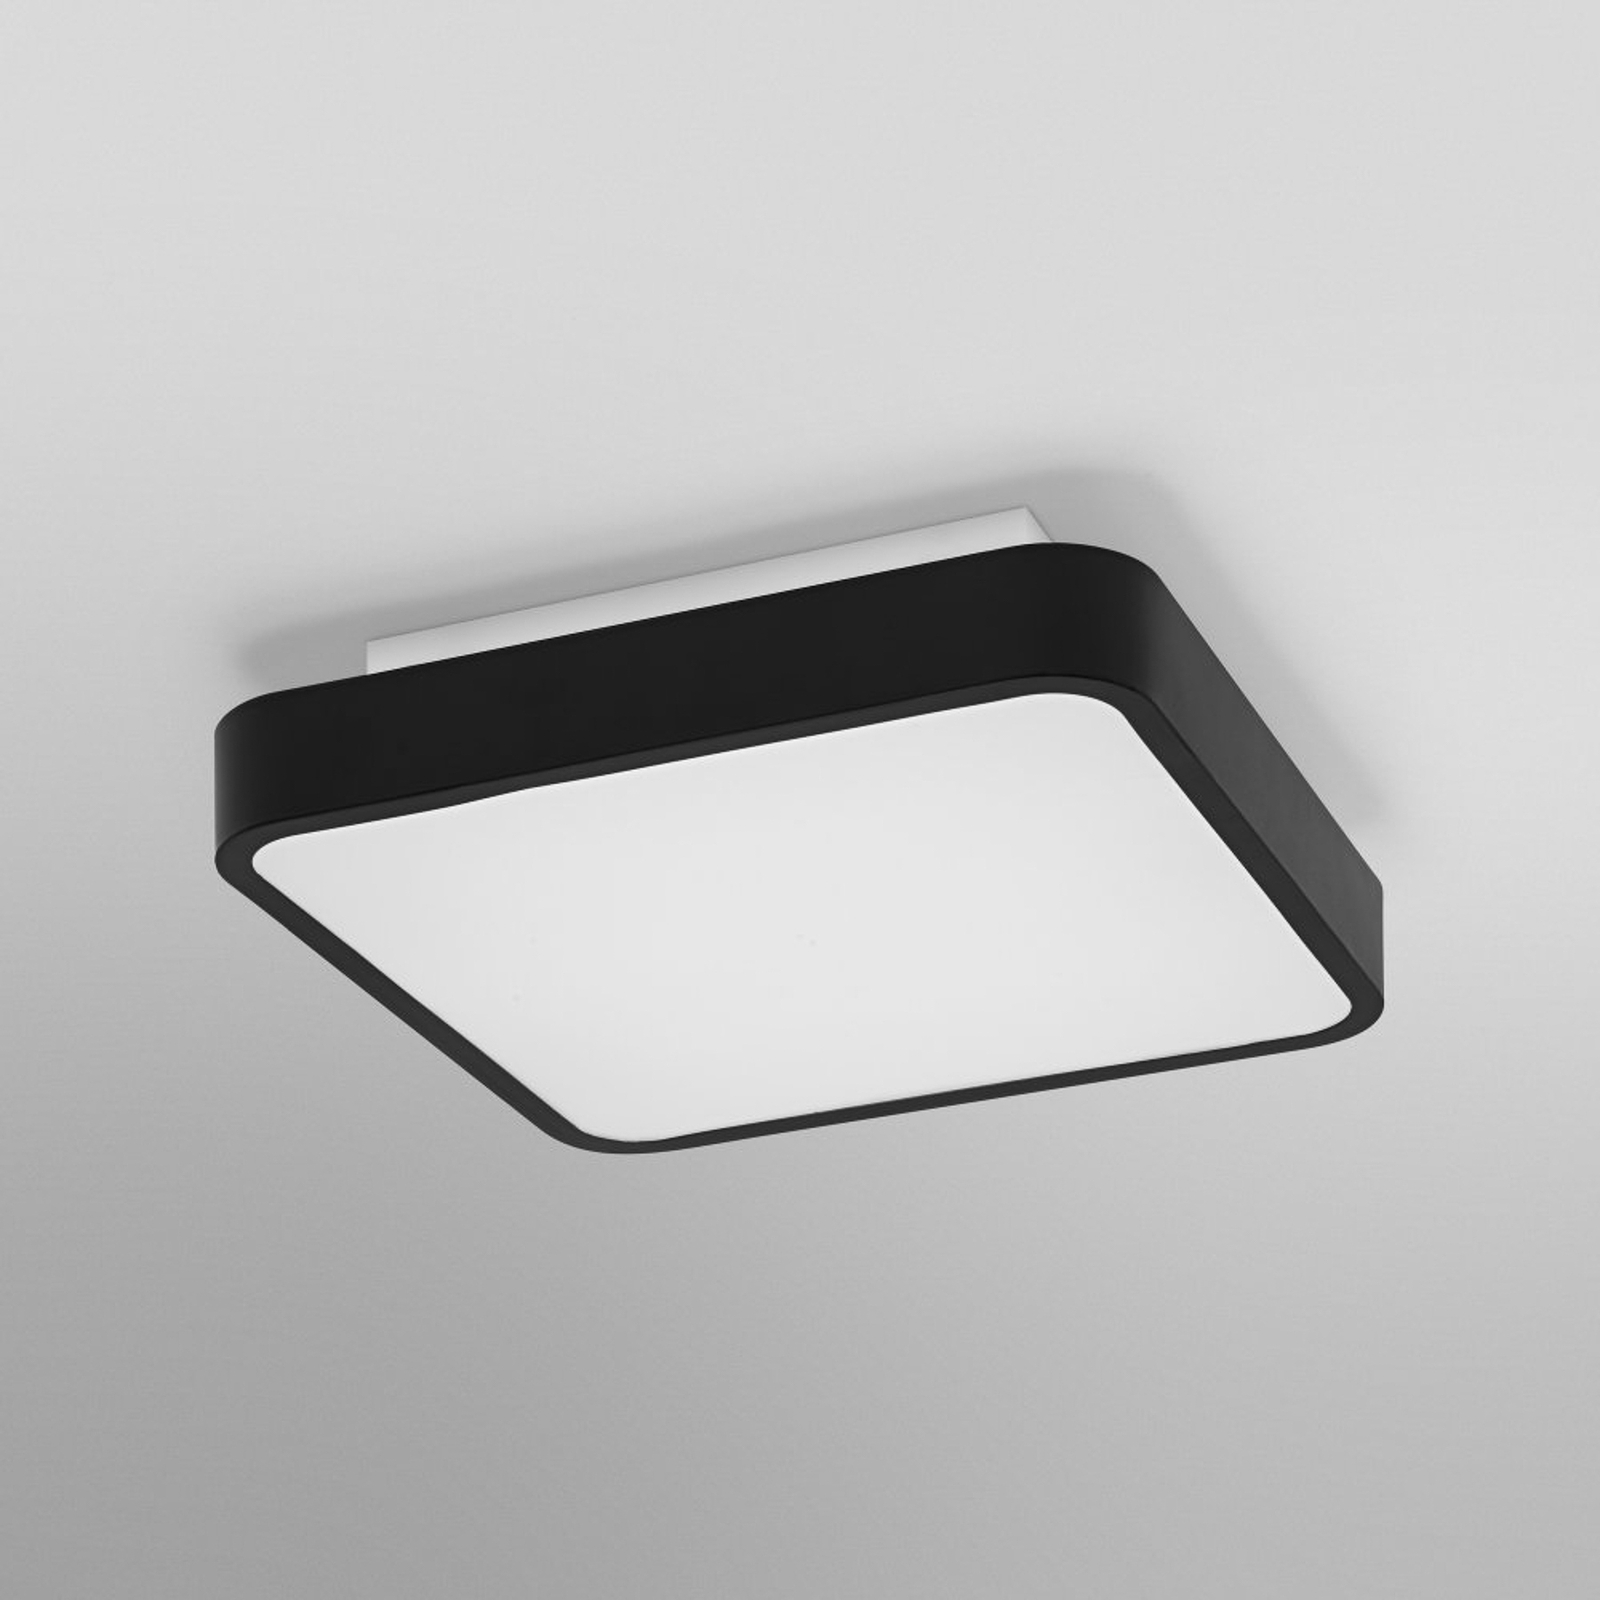 LEDVANCE SMART+ WiFi Orbis Backlight noir 35x35